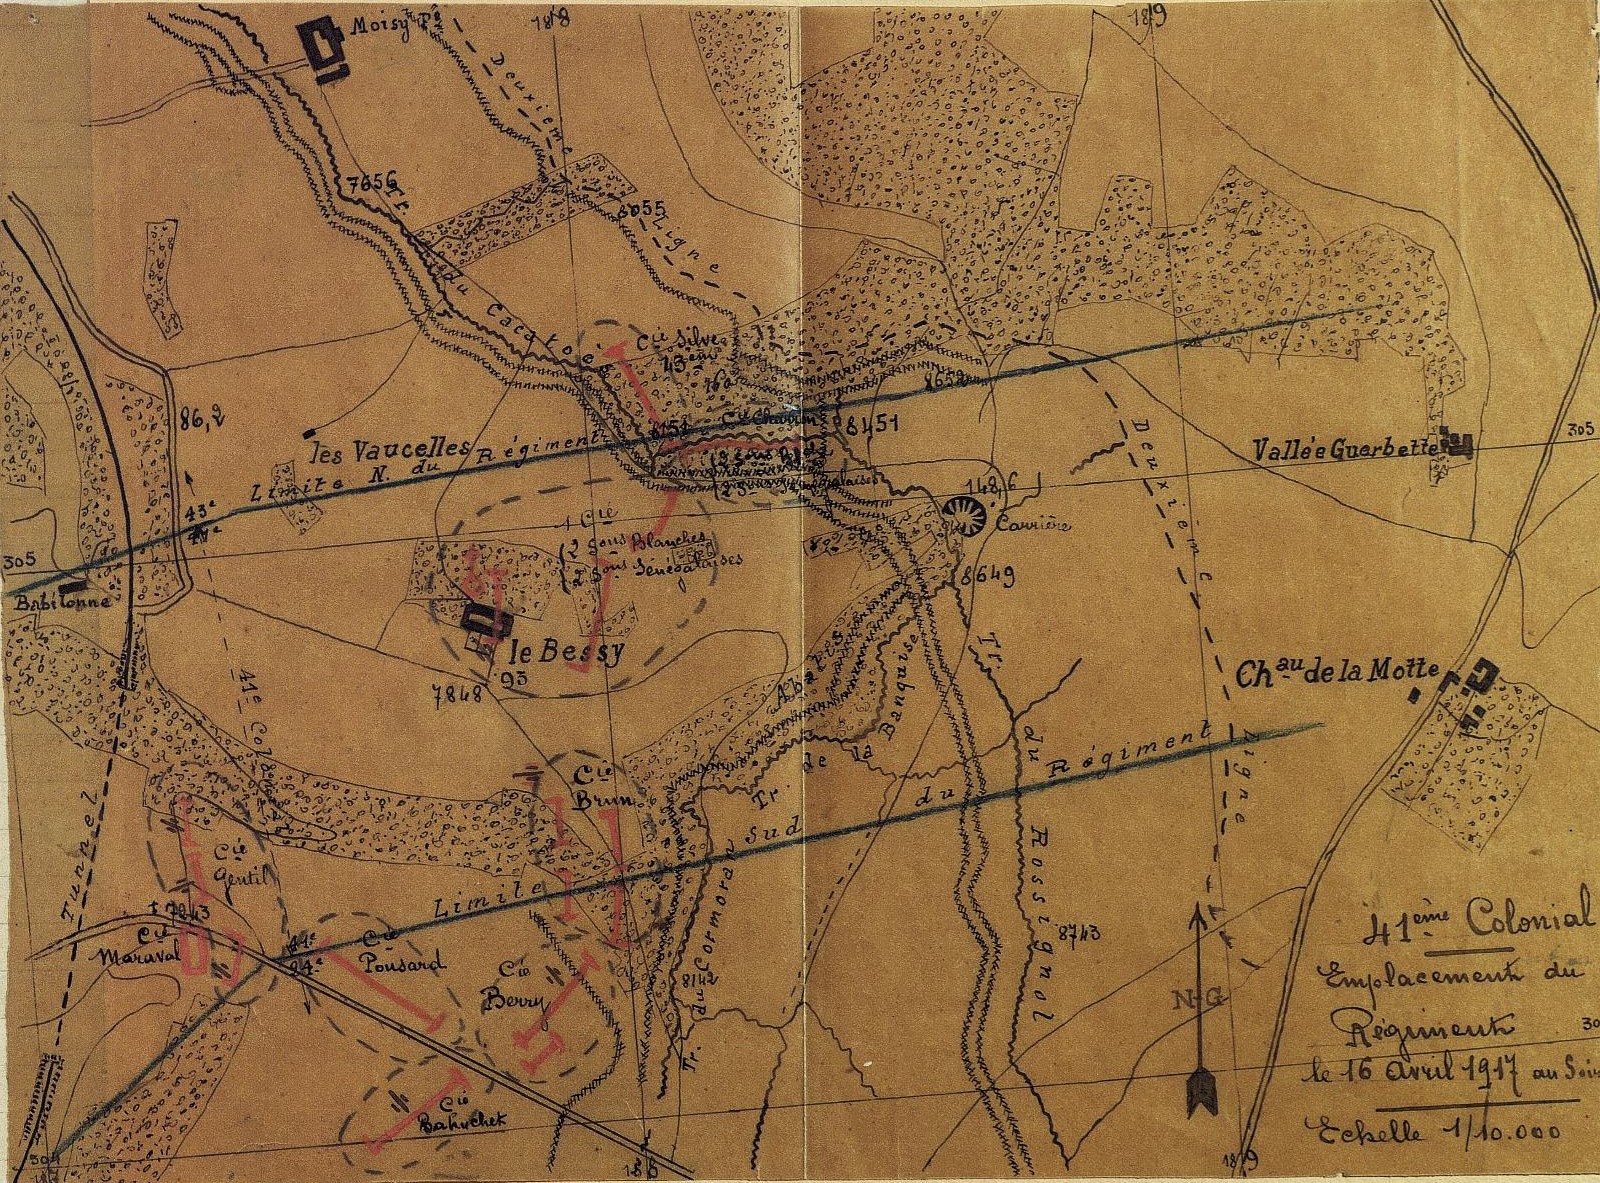 Emplacement du 41e régiment d'infanterie coloniale le 16 avril 1917 à Laffaux